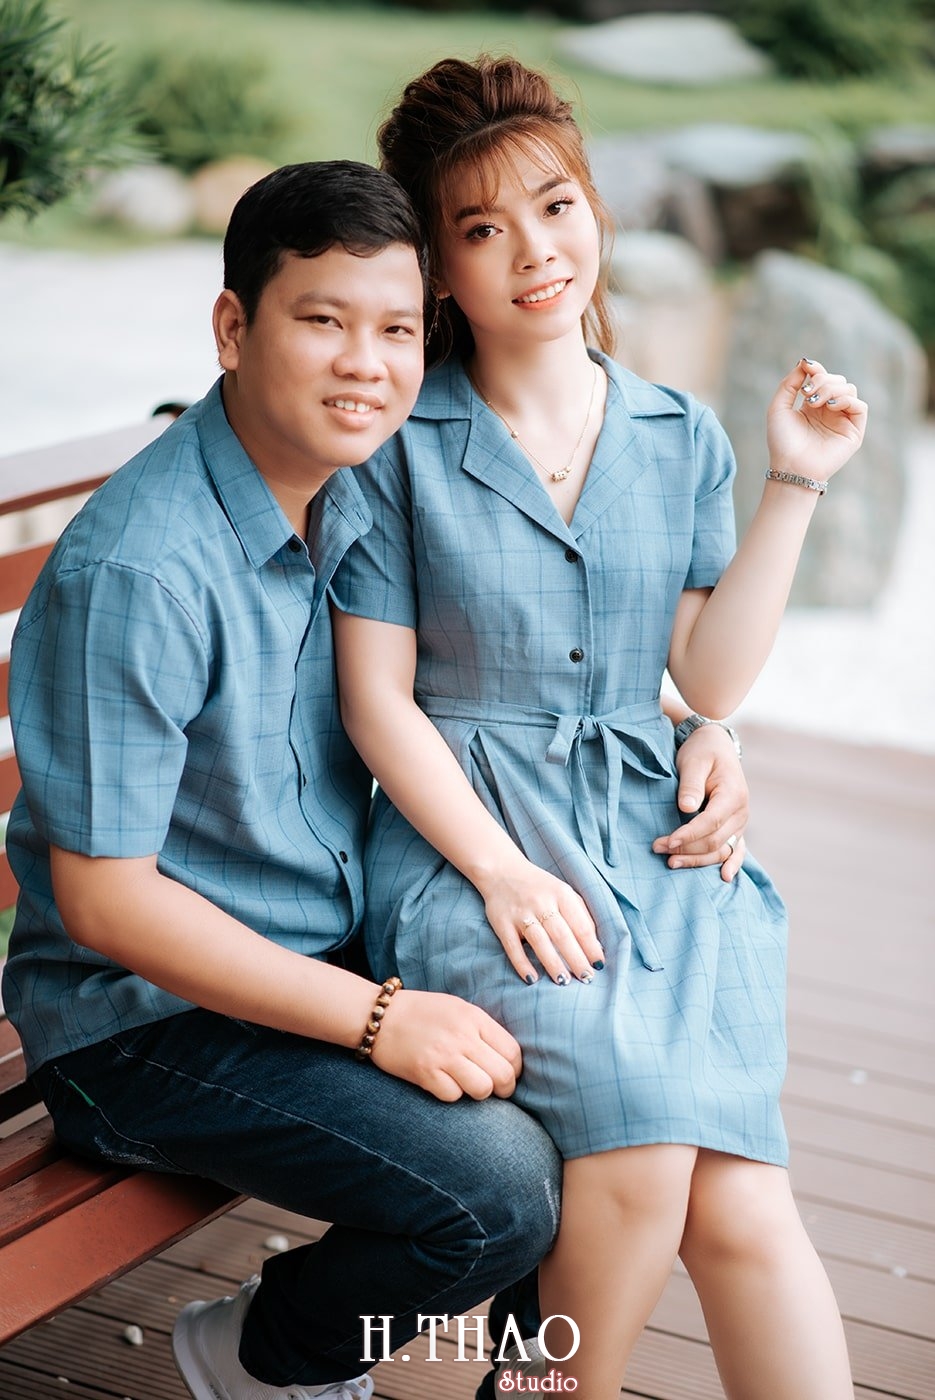 Couple 2 - Album ảnh couple chụp tại Landmark 81 đẹp kiểu tây - HThao Studio